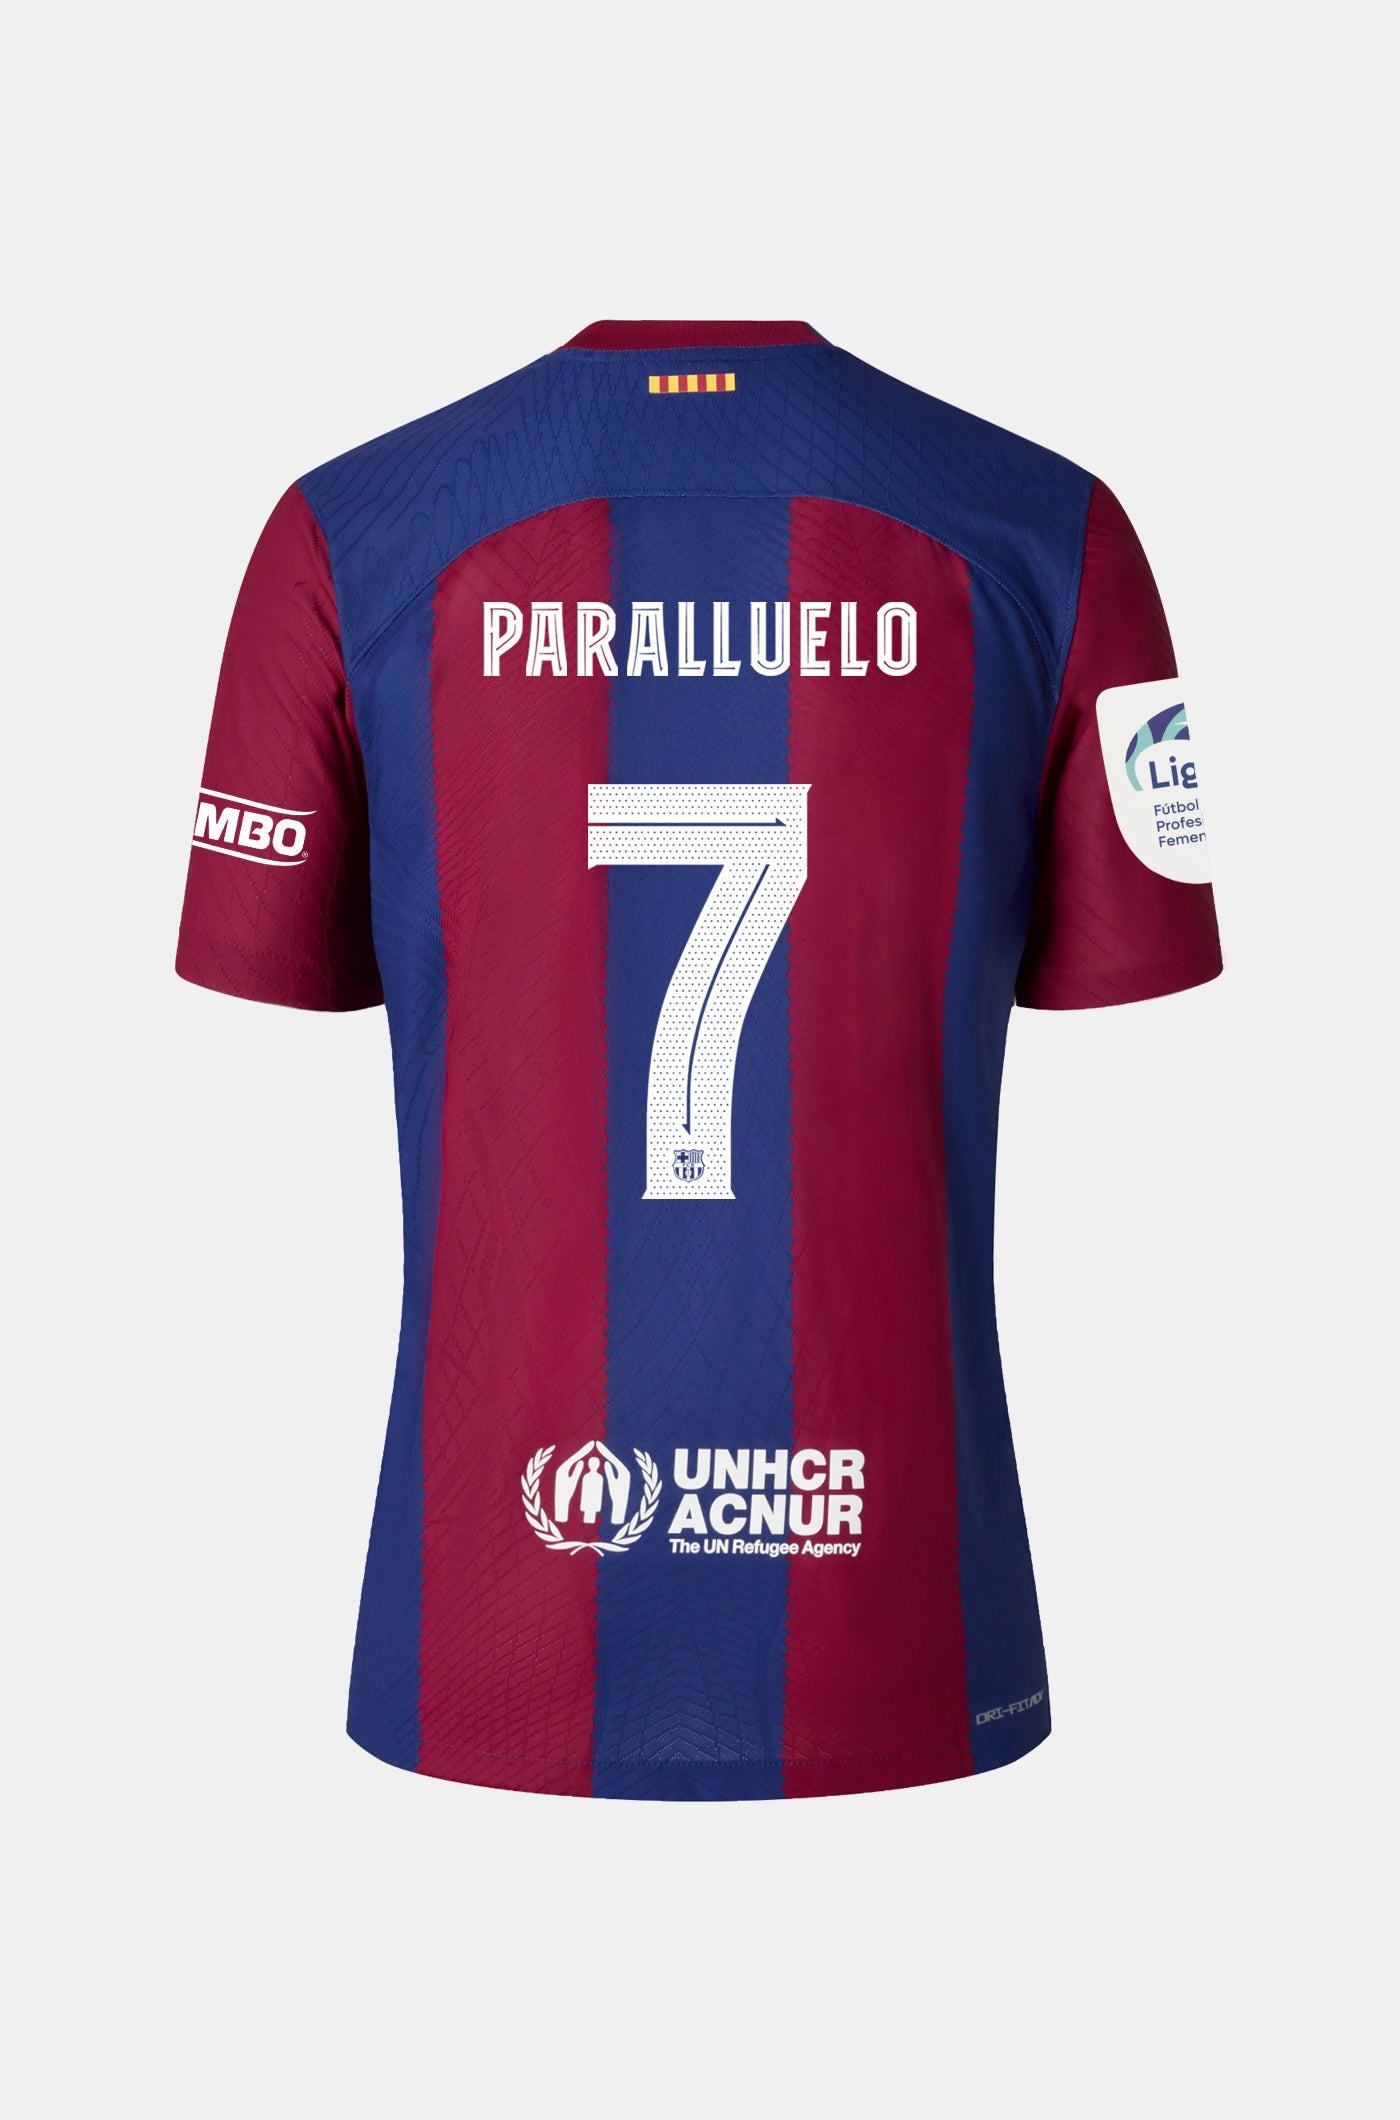 Liga F FC Barcelona Home Shirt 23/24 Player's Edition - Women - PARALLUELO